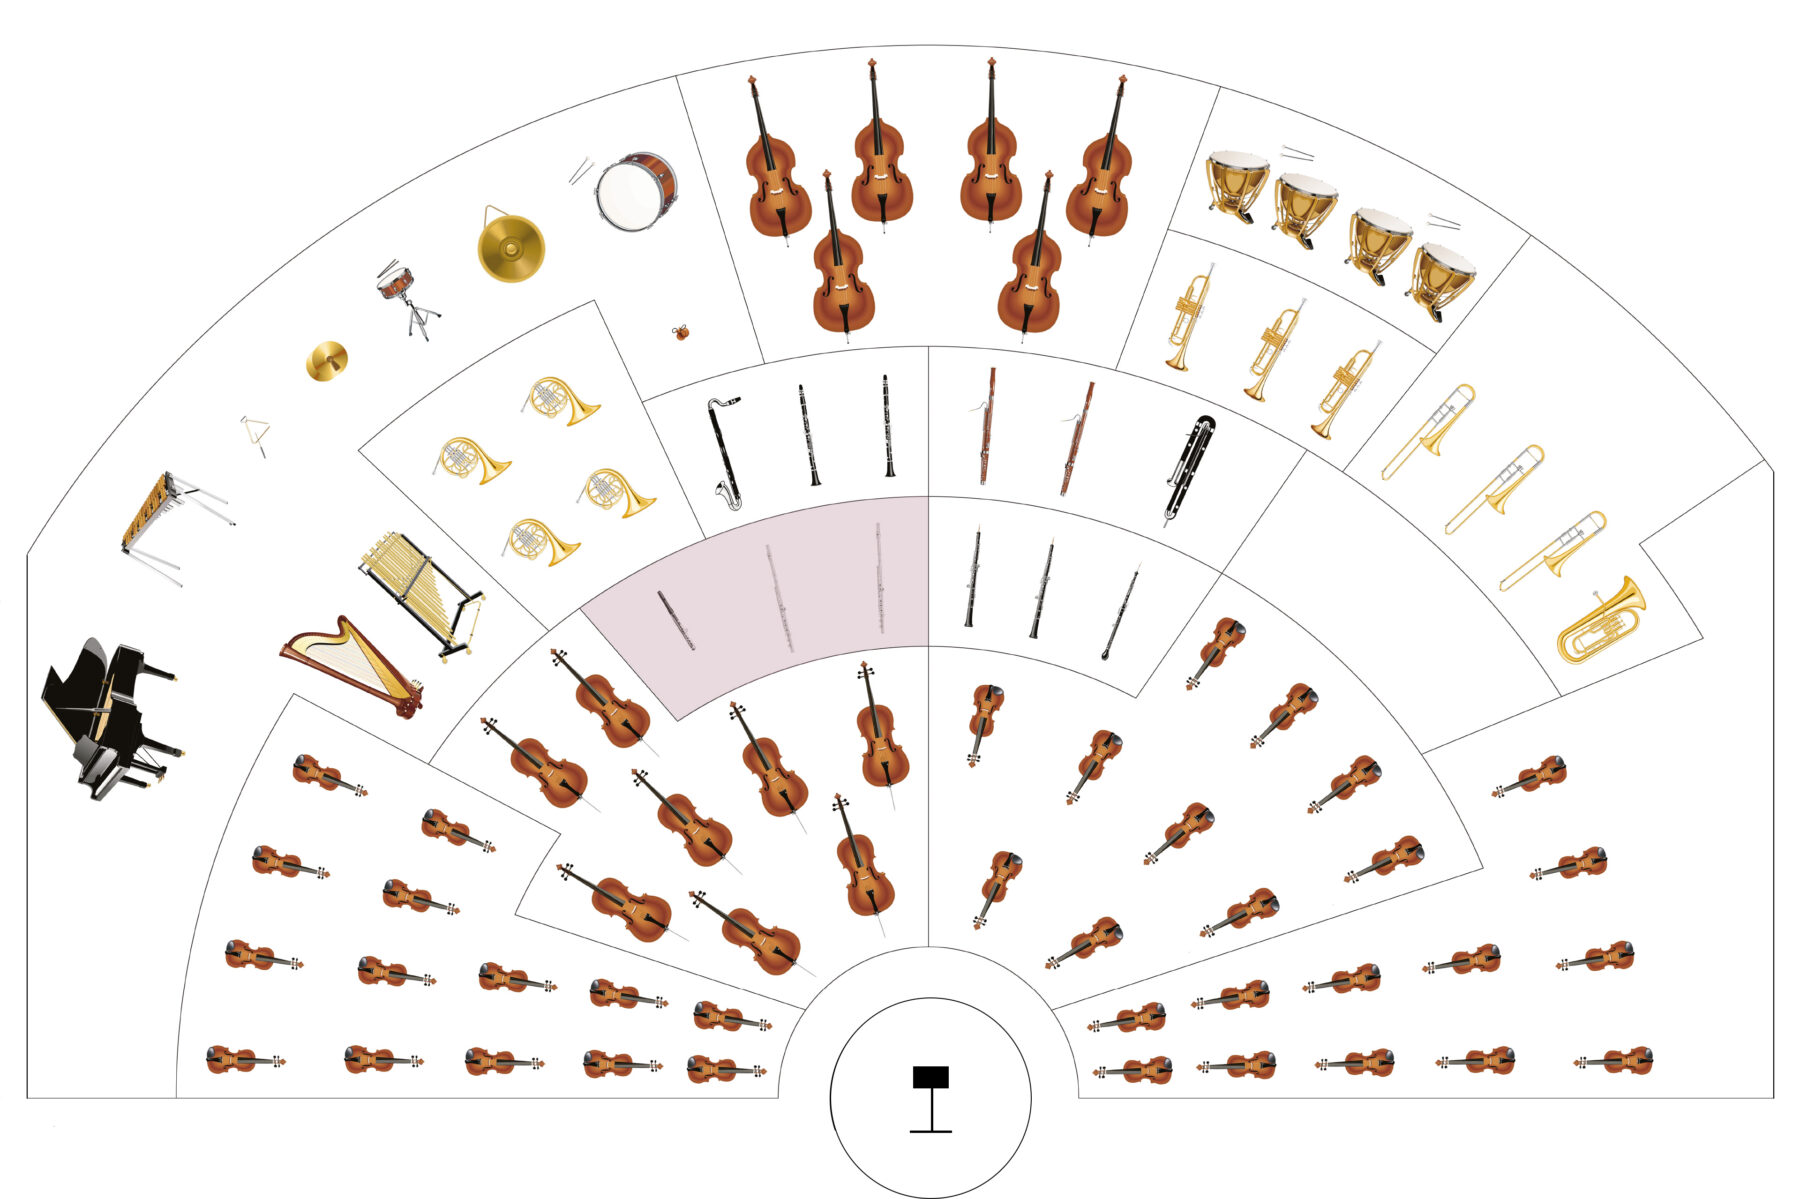 The musicians of the Orchestre Métropolitain